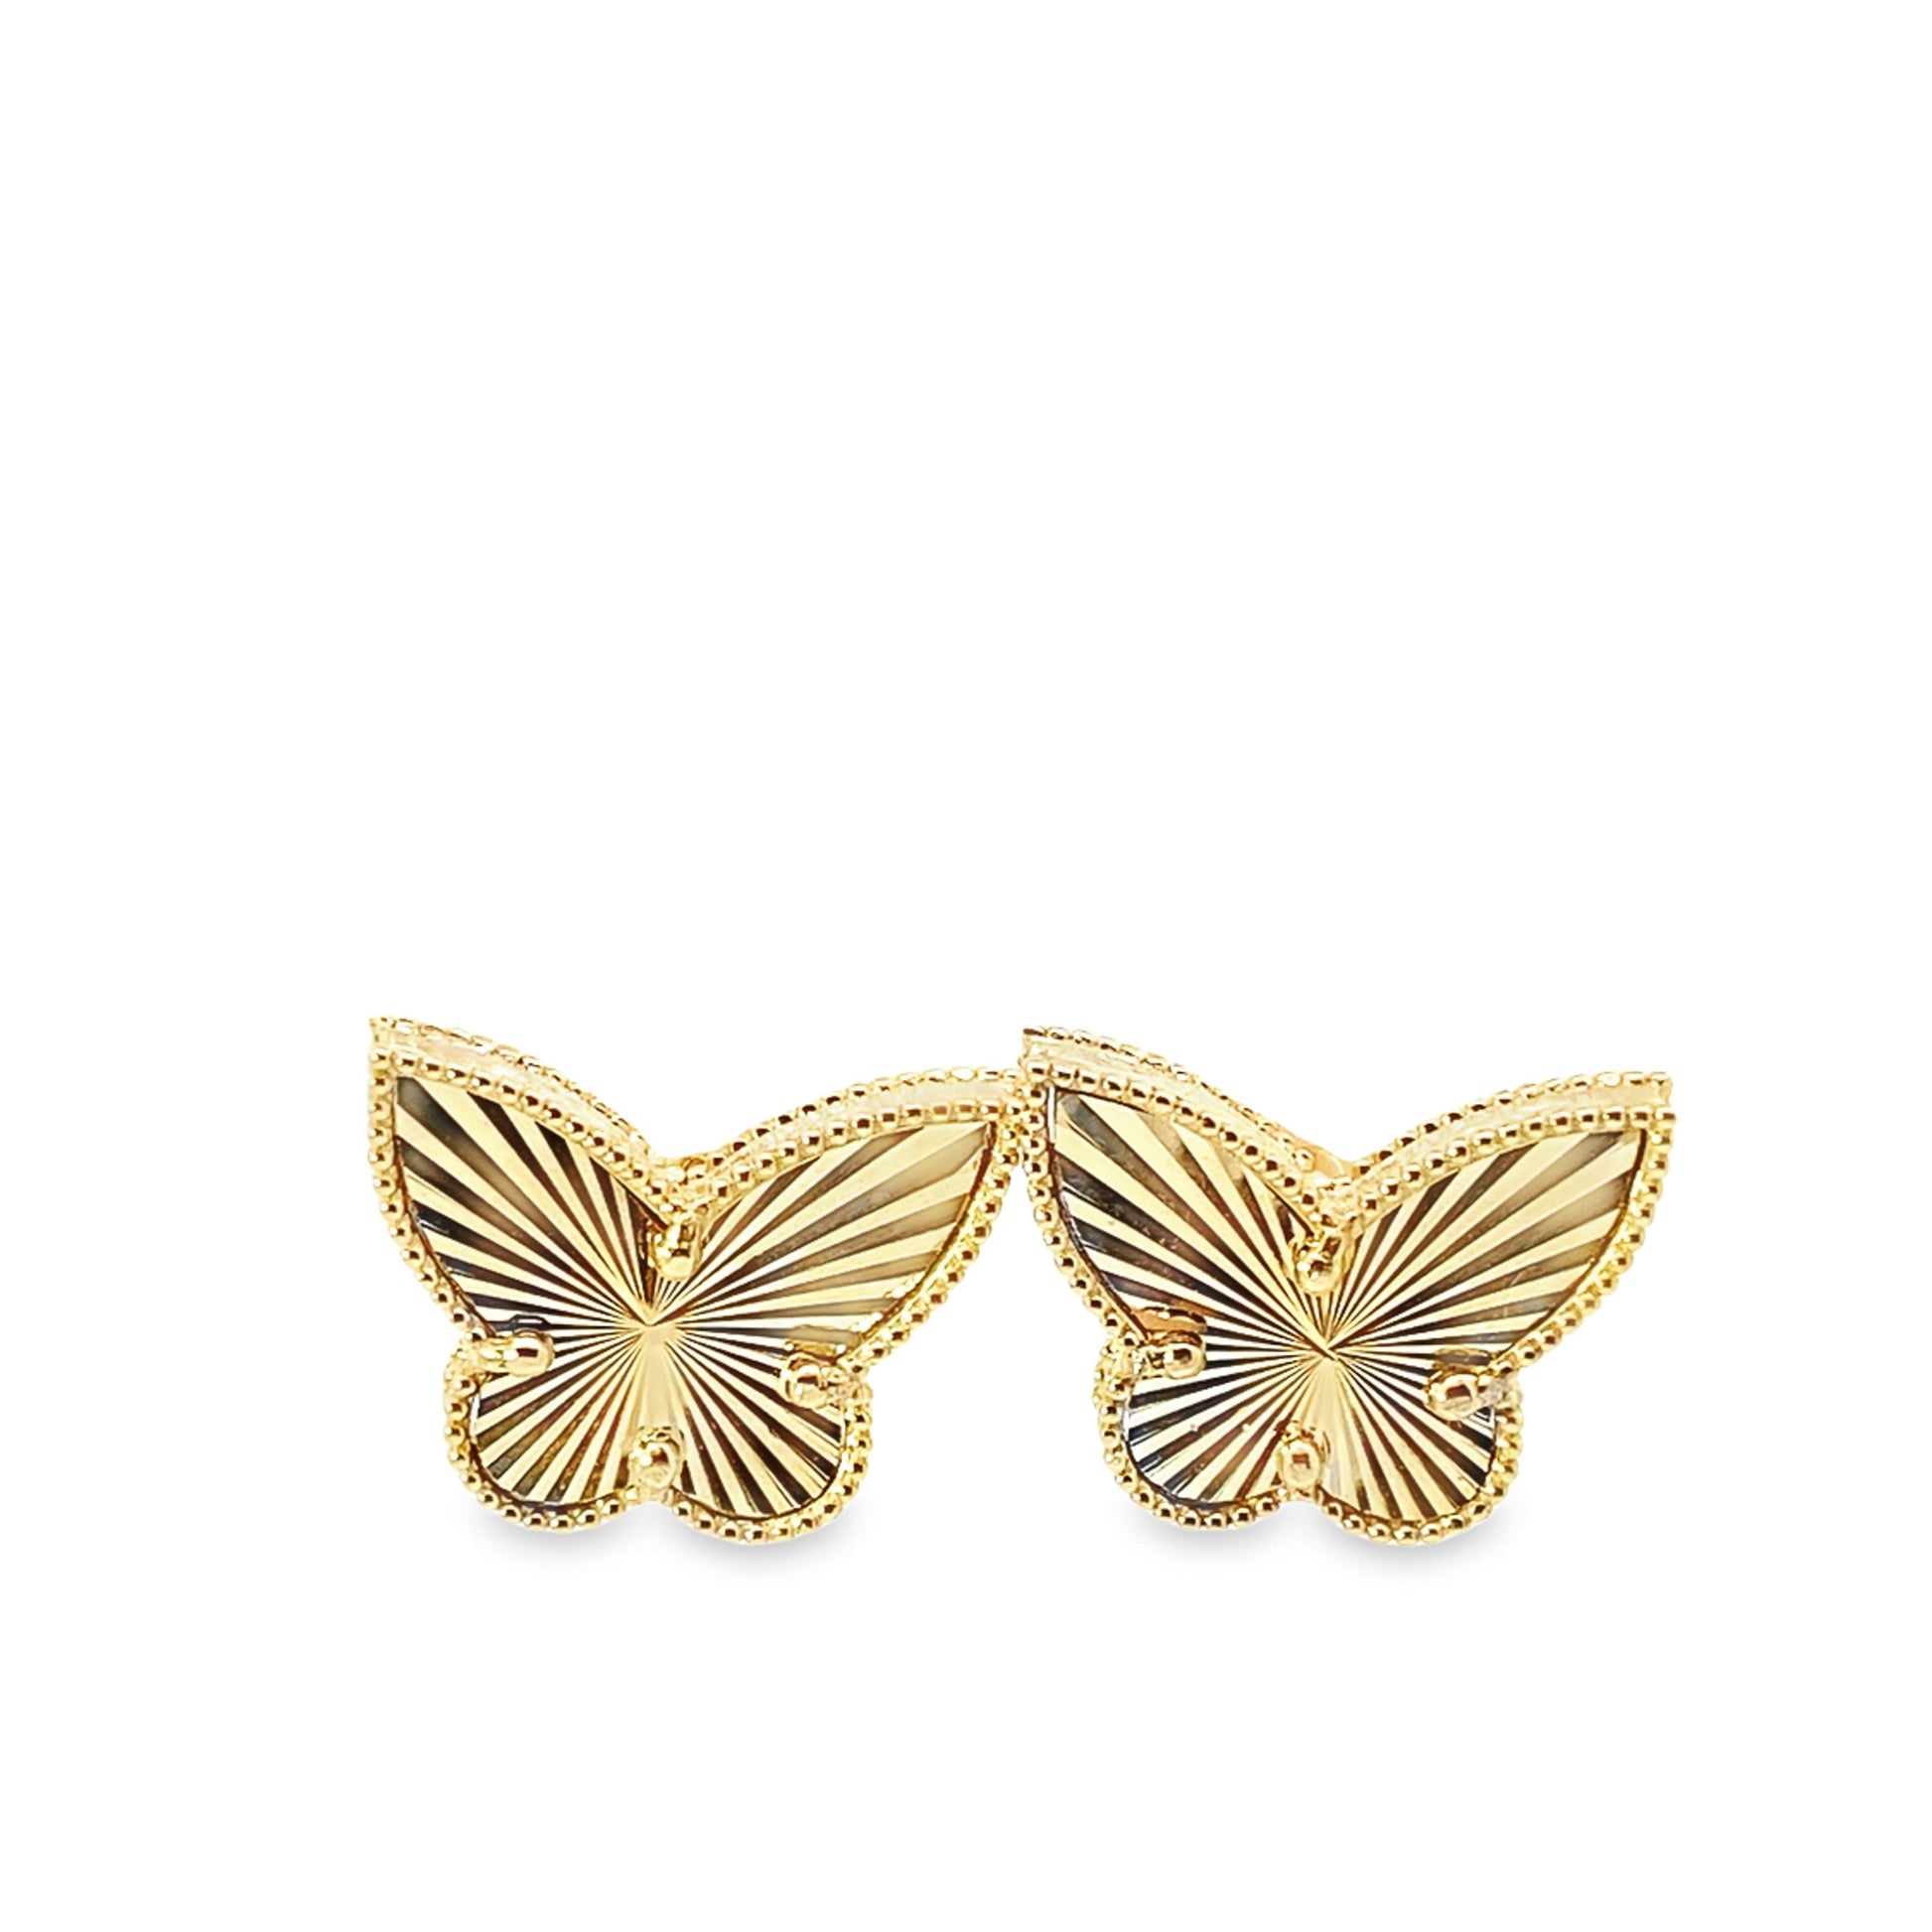 14K Yellow Gold Butterfly Stud Earrings 2.8Dwt